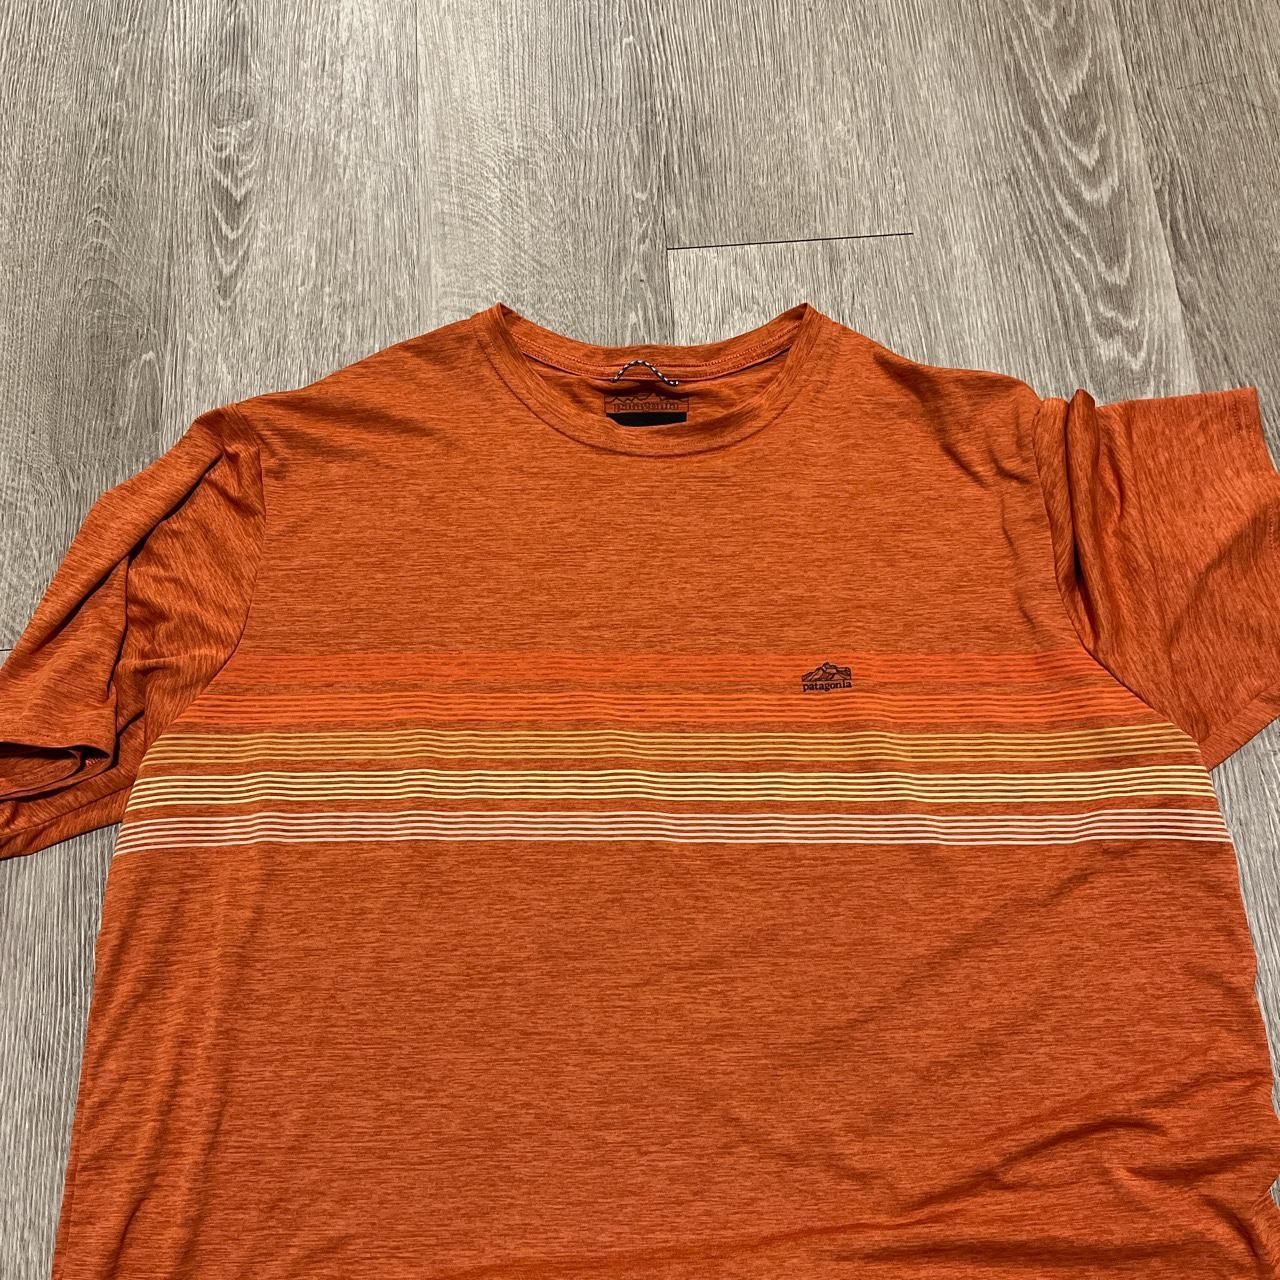 Burnt orange Patagonia shirt - Depop